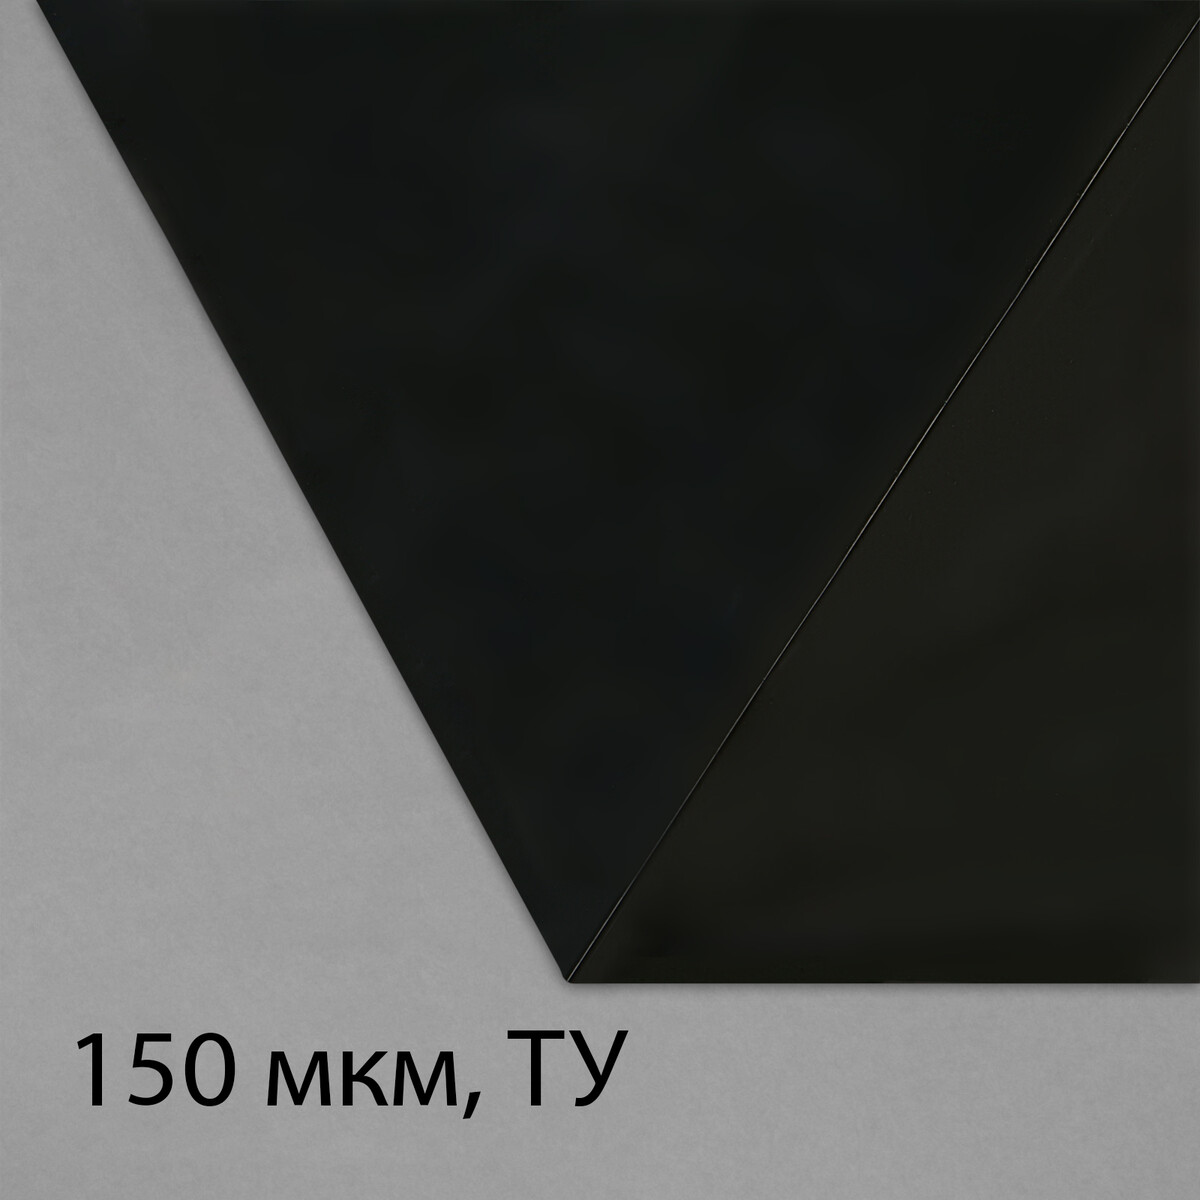 Пленка из полиэтилена, техническая, толщина 150 мкм, черная, 5 × 3 м, рукав (1.5 м × 2), эконом 50%, для дома и сада пленка полиэтиленовая техническая толщина 200 мкм 5 × 3 м рукав 1 5 м × 2 черная 2 сорт эконом 50 %